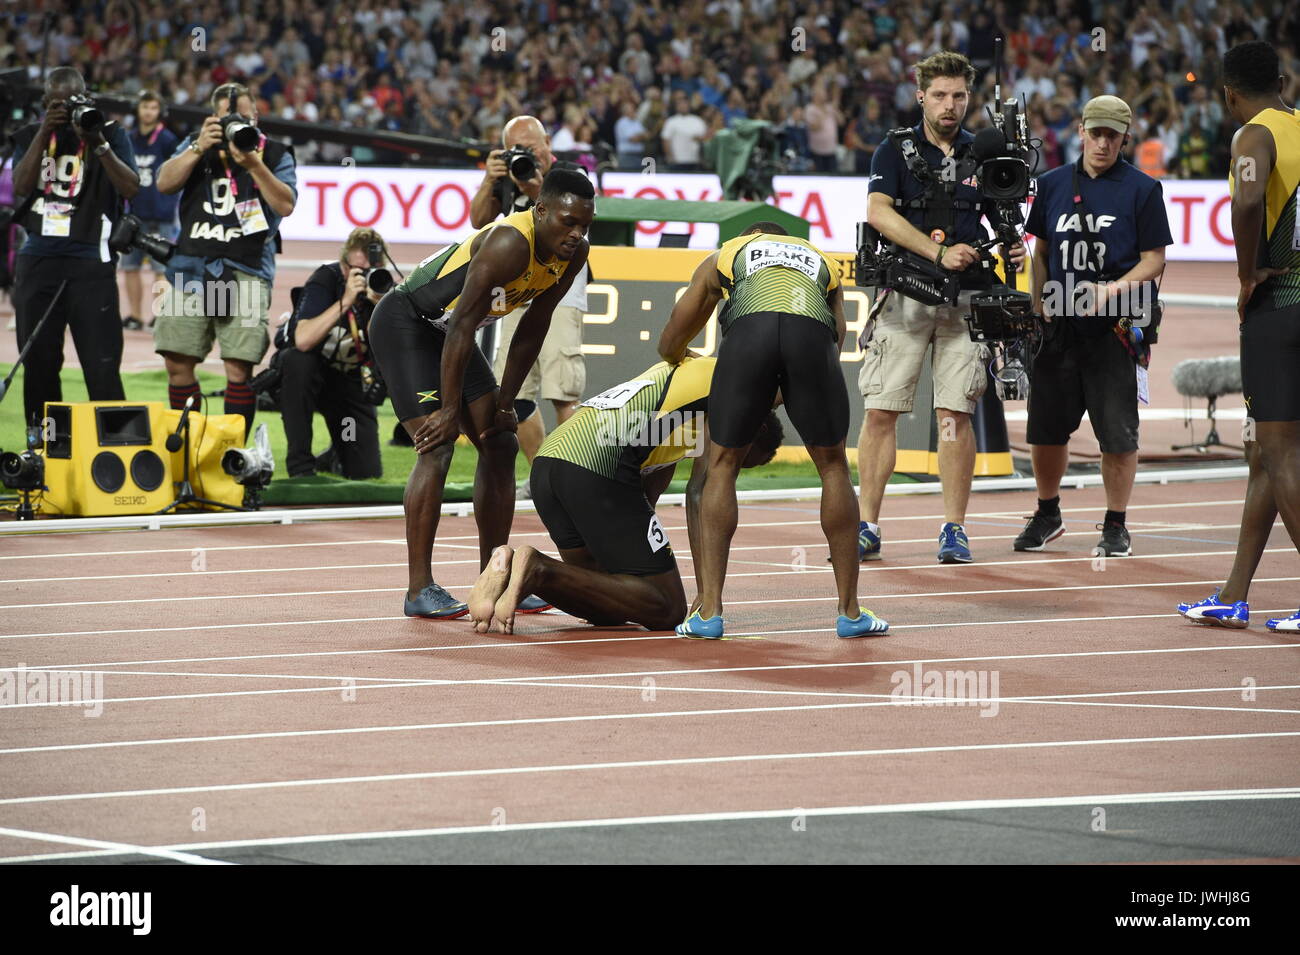 Londres, Reino Unido. 12 Aug, 2017. El atleta jamaicano Usain Bolt se arrodilla en el suelo después de sufrir una lesión mientras compiten en los hombres de 4 x 100 metros relevos carrera en el Campeonato Mundial de la IAAF en Londres, Reino Unido, 12 de agosto de 2017. Foto: Rainer Jensen/dpa/Alamy Live News Foto de stock